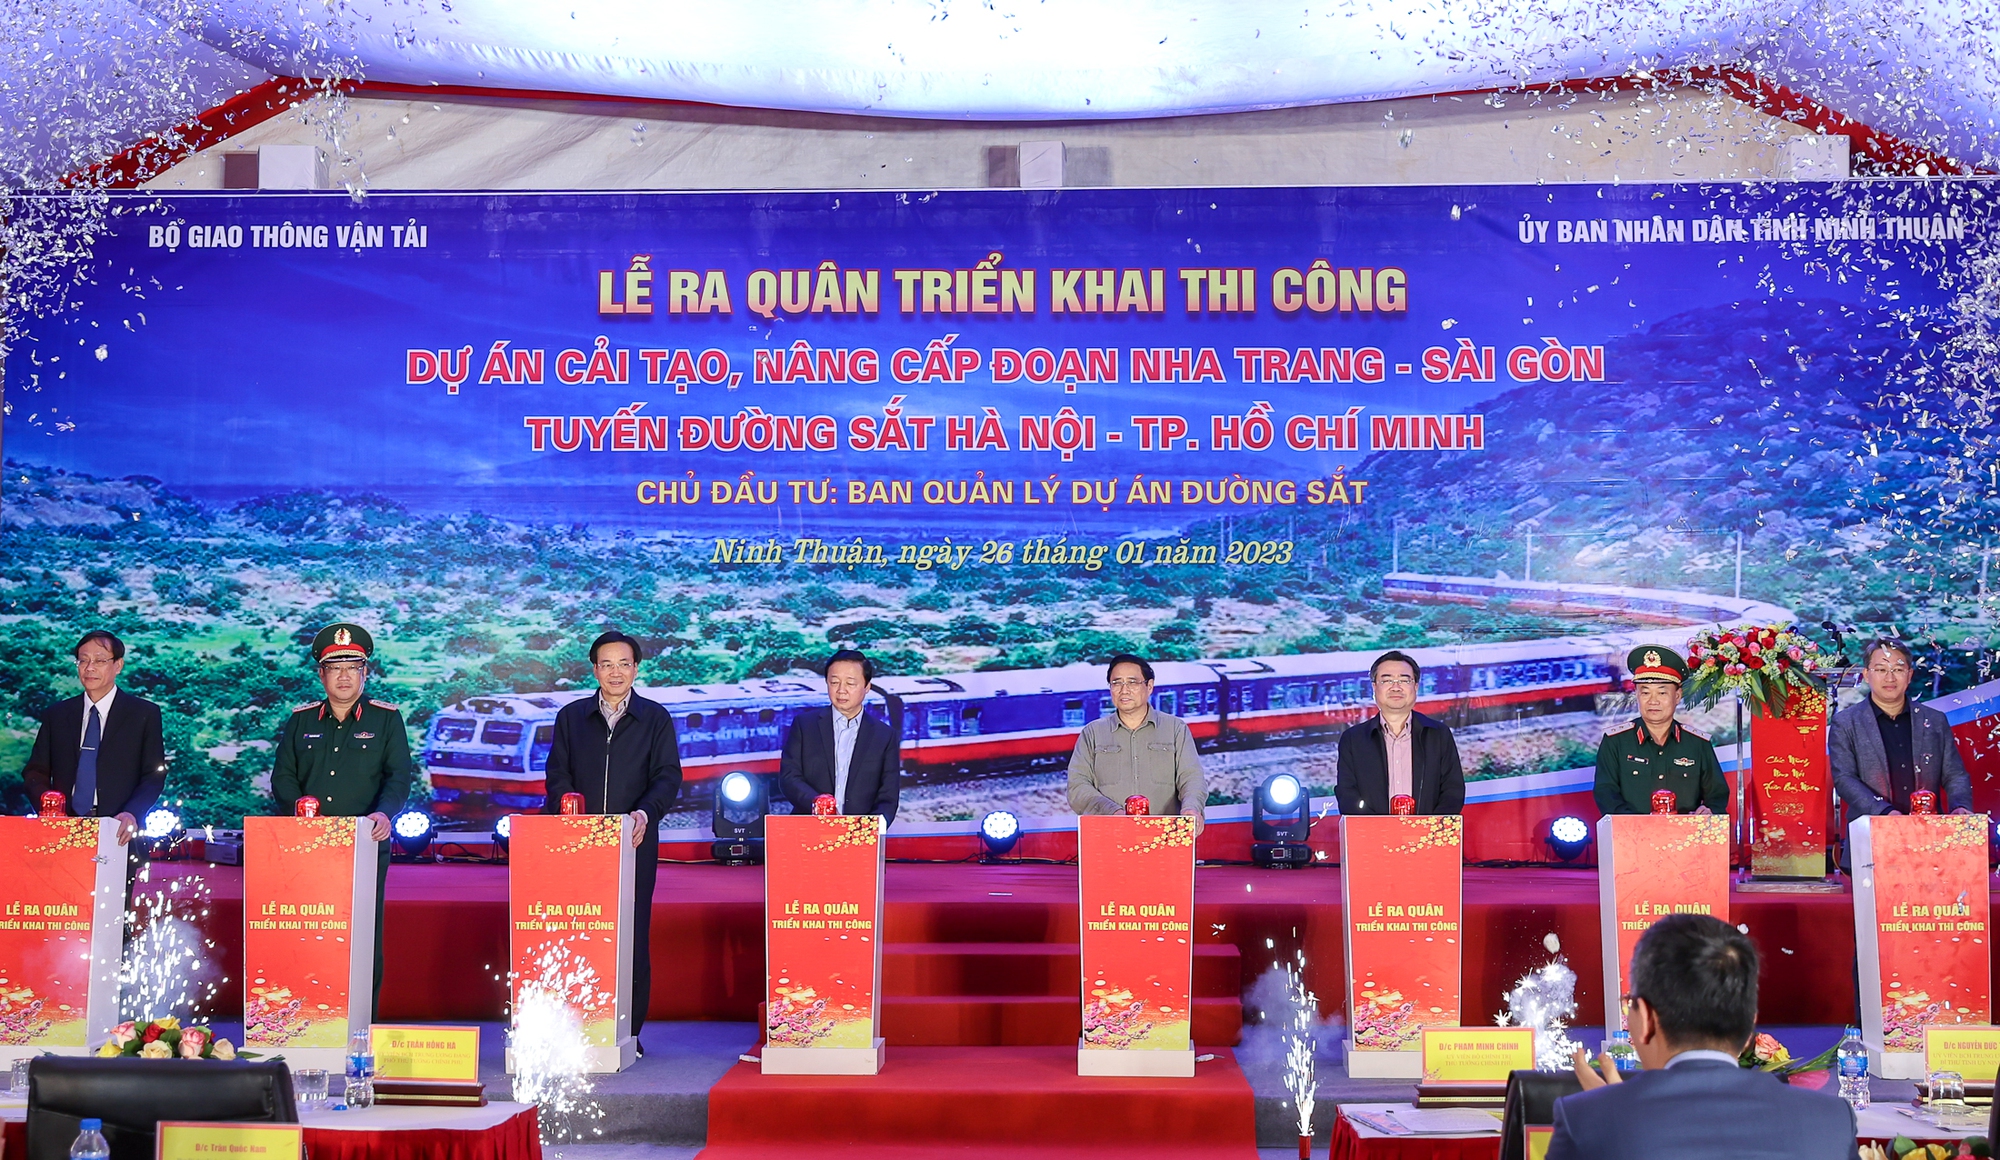 Thủ tướng: Vừa cải tạo, nâng cấp đường sắt Hà Nội-TPHCM, vừa nghiên cứu, chuẩn bị đầu tư đường sắt Bắc Nam